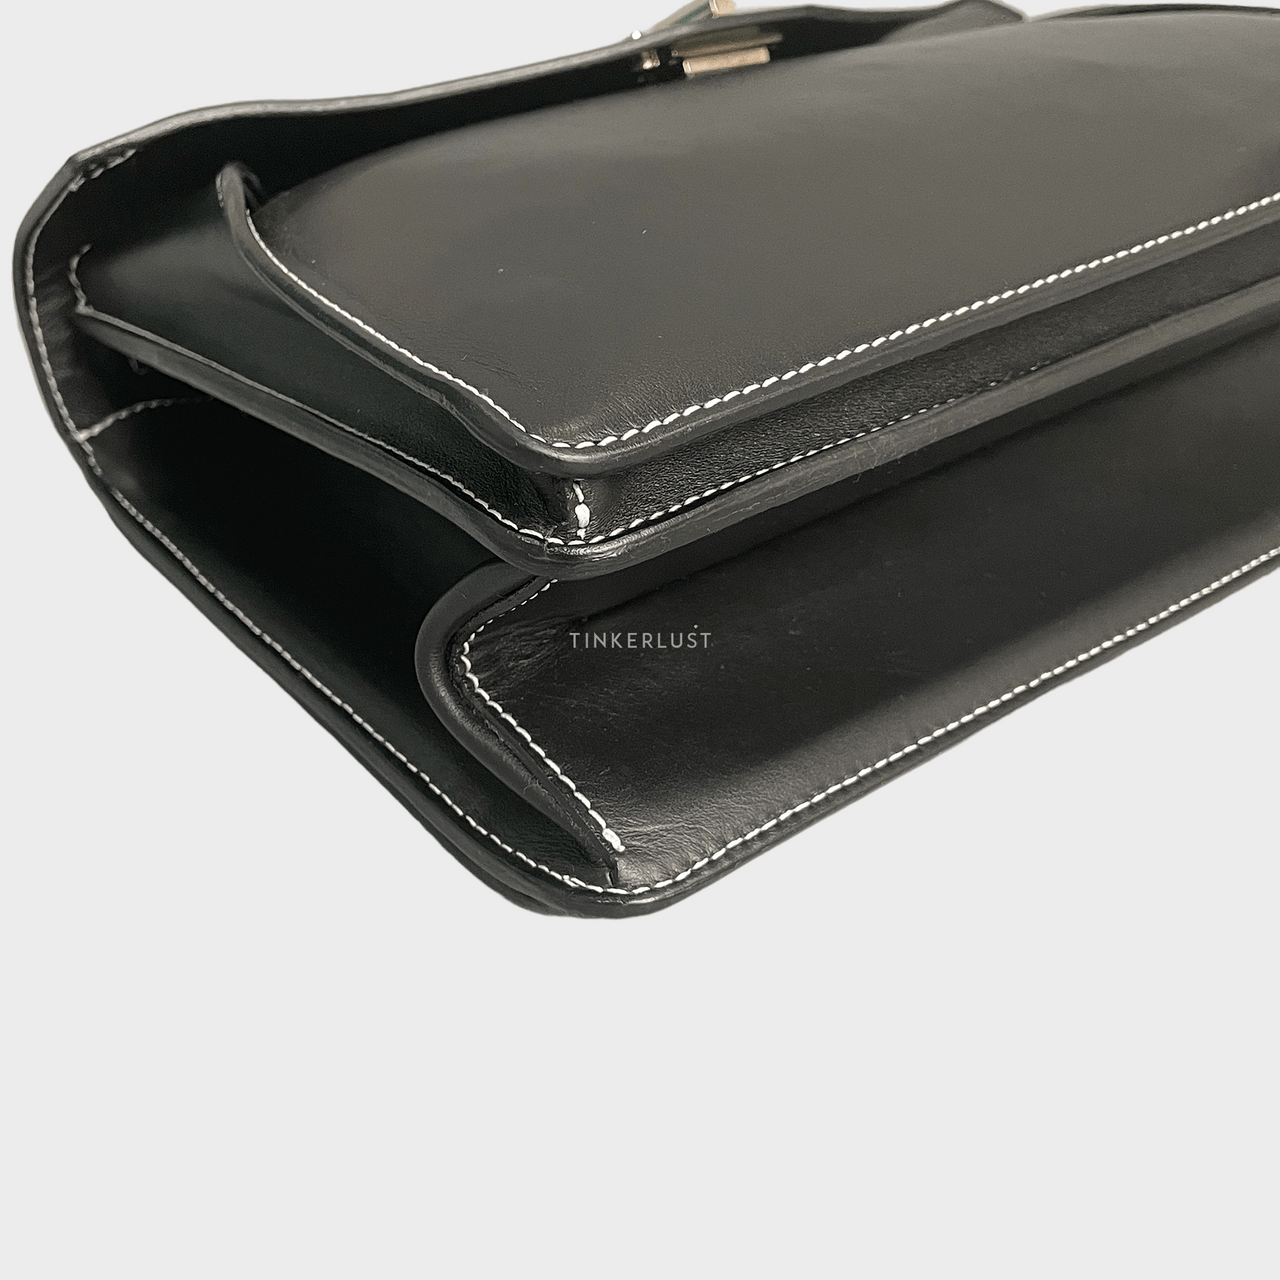 Proenza Schouler Leather Hava Top Handle Black Bag